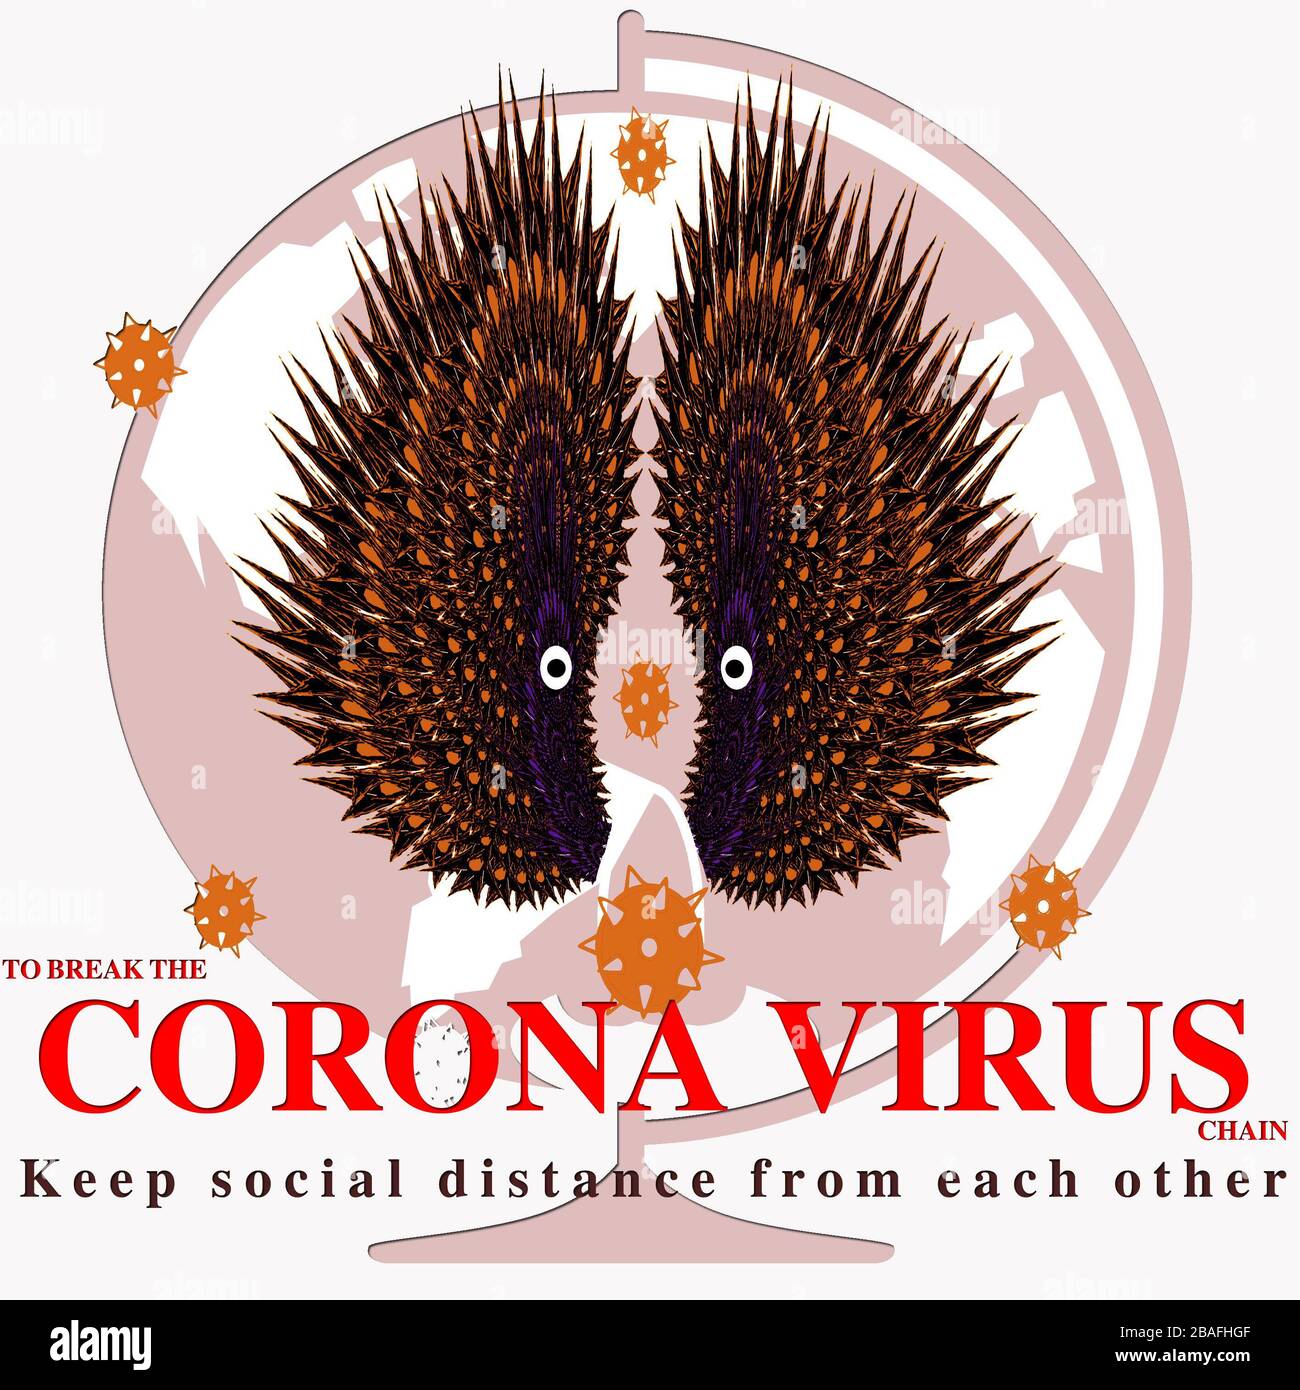 Corona virus break the chain artwork and message Stock Photo